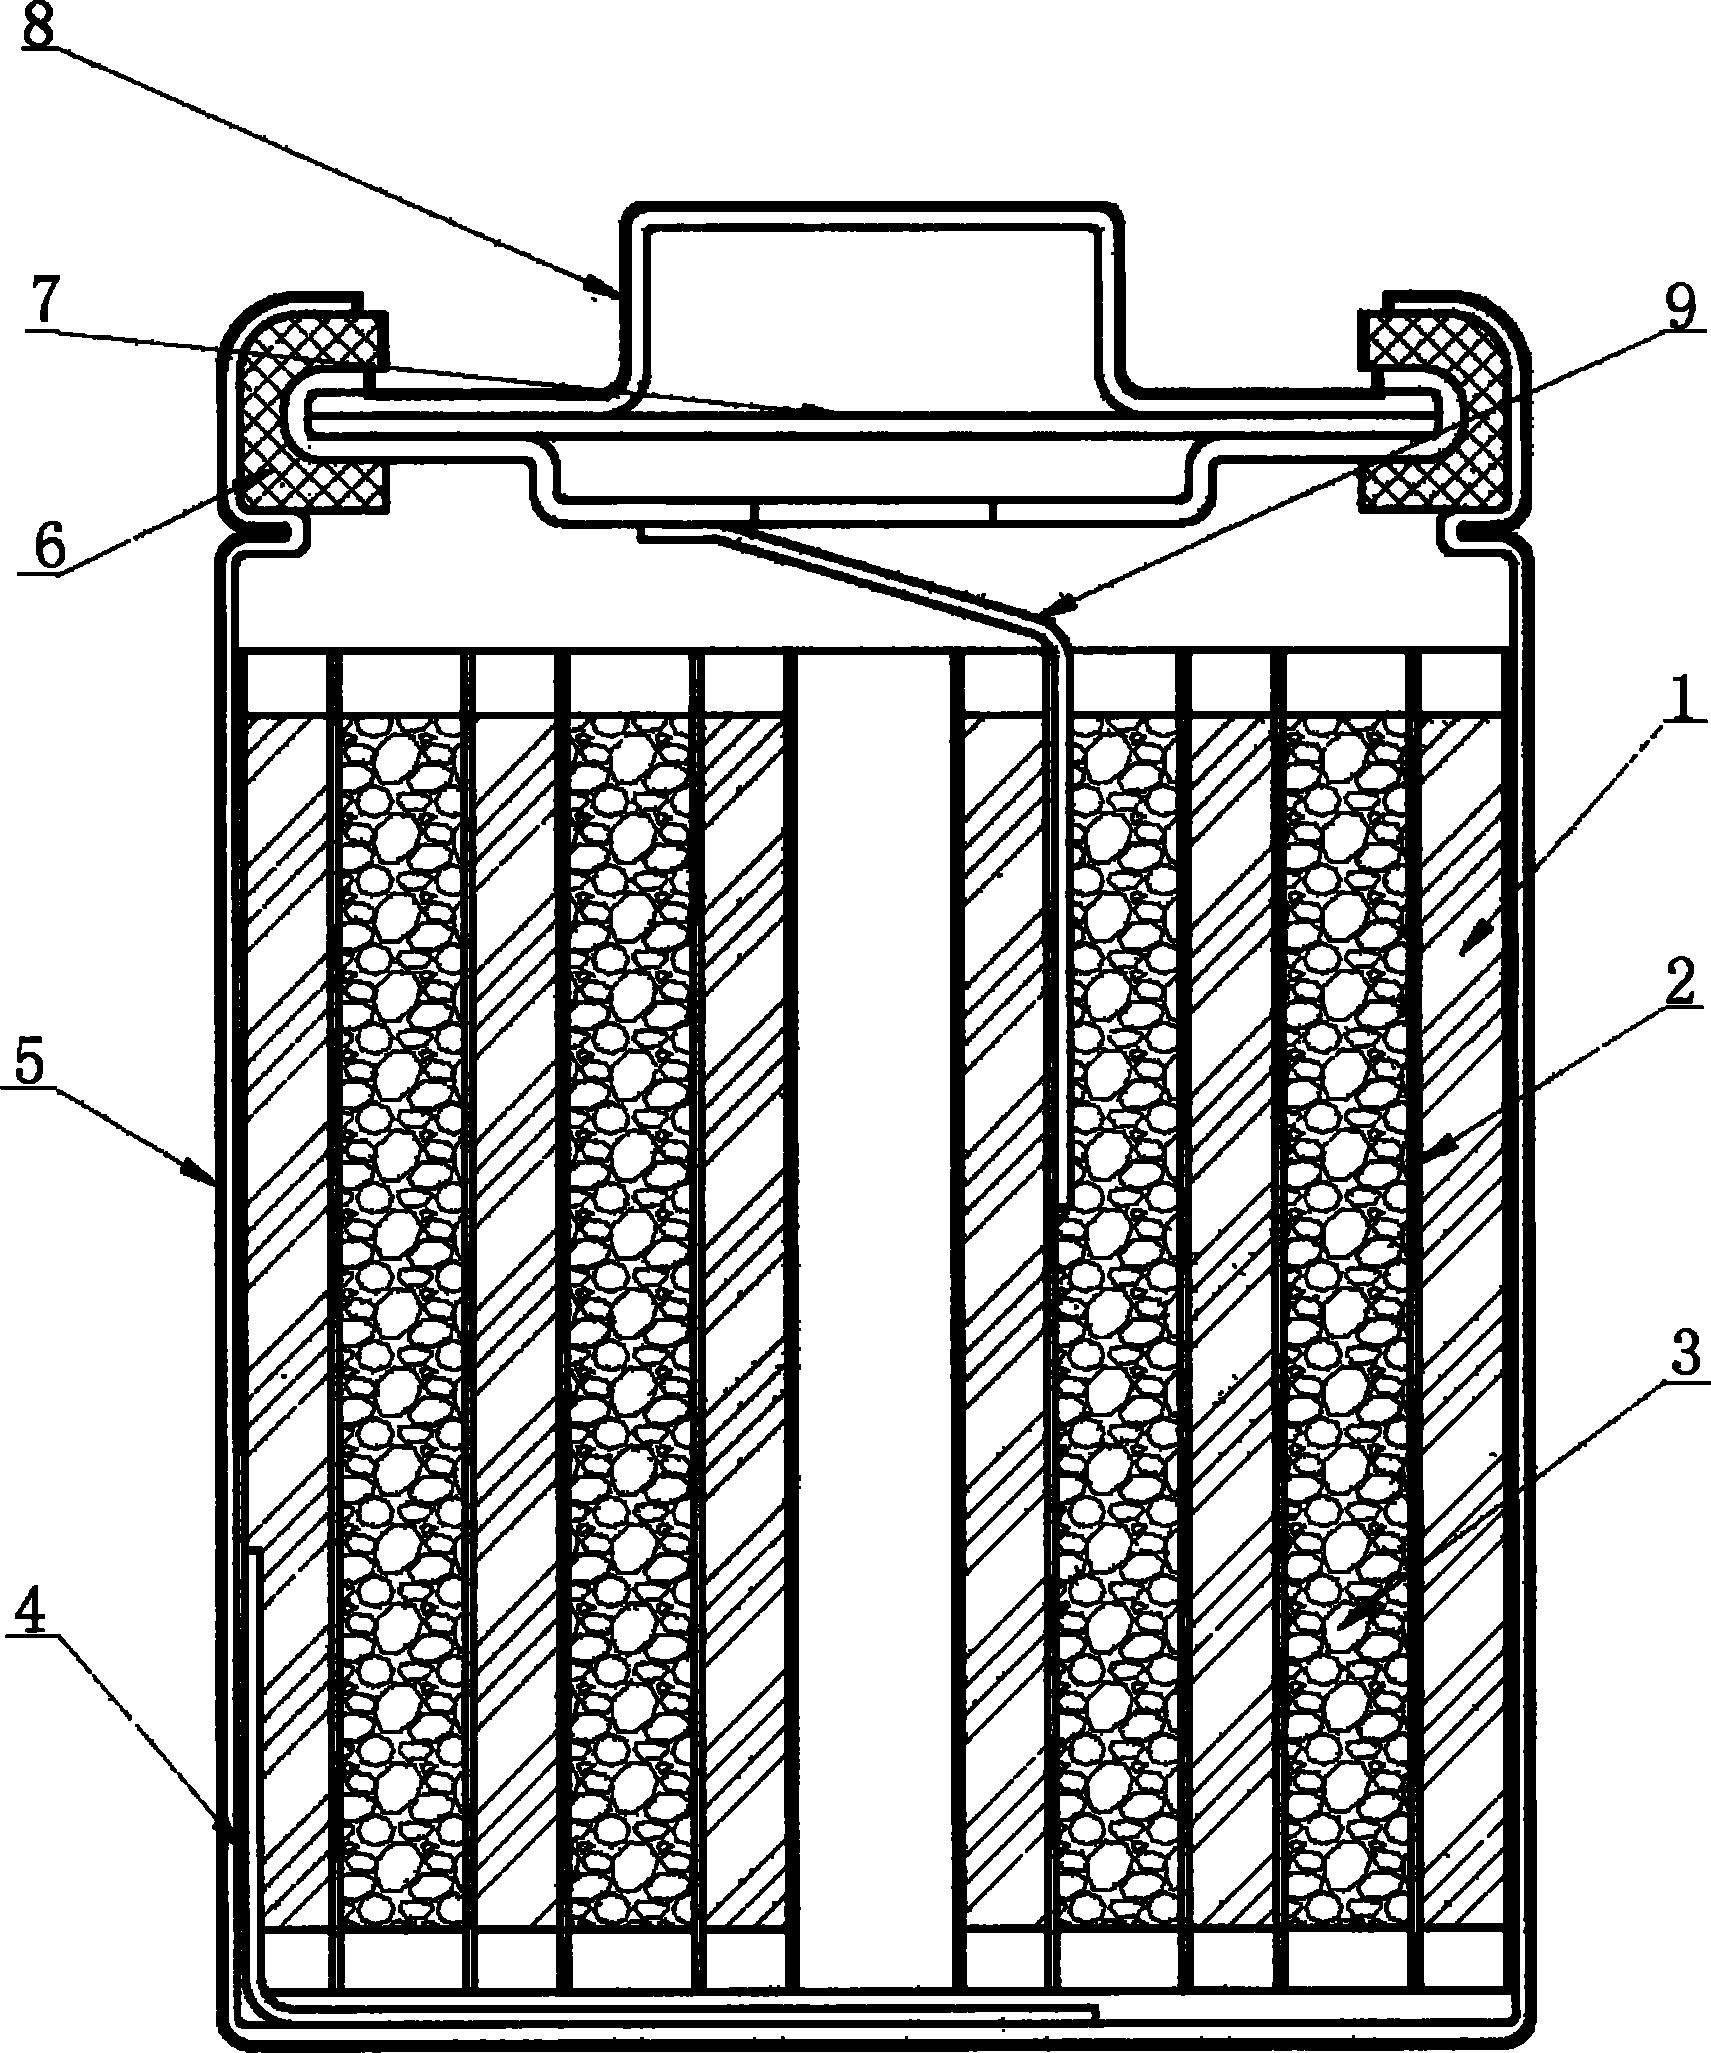 圆柱形锂离子电池结构图片